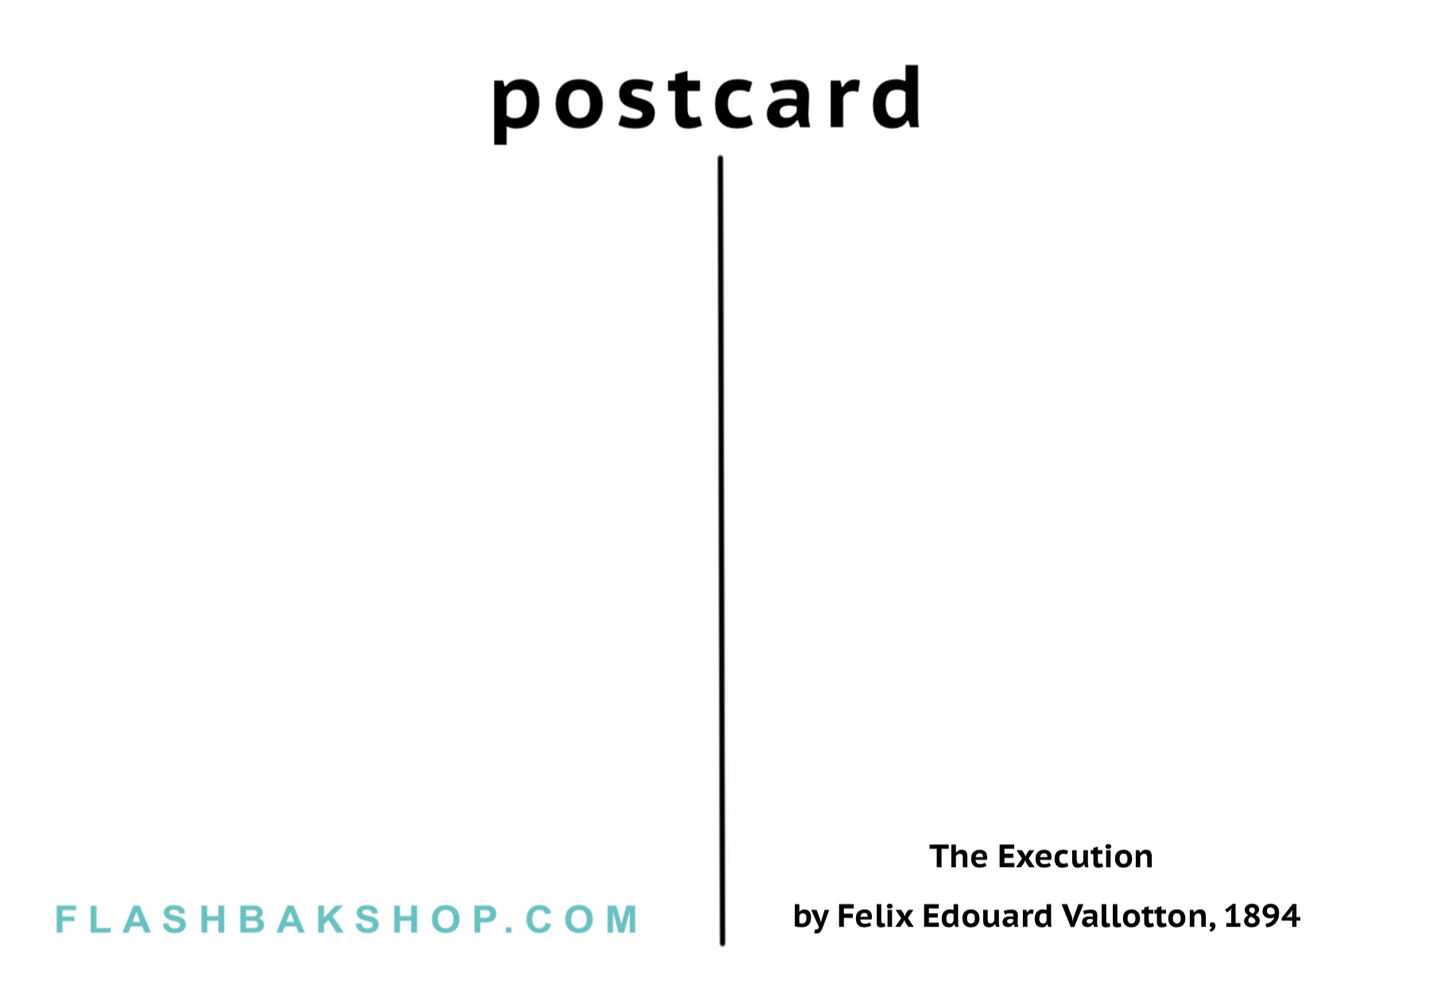 The Execution by Felix Edouard Vallotton, 1894 - Postcard